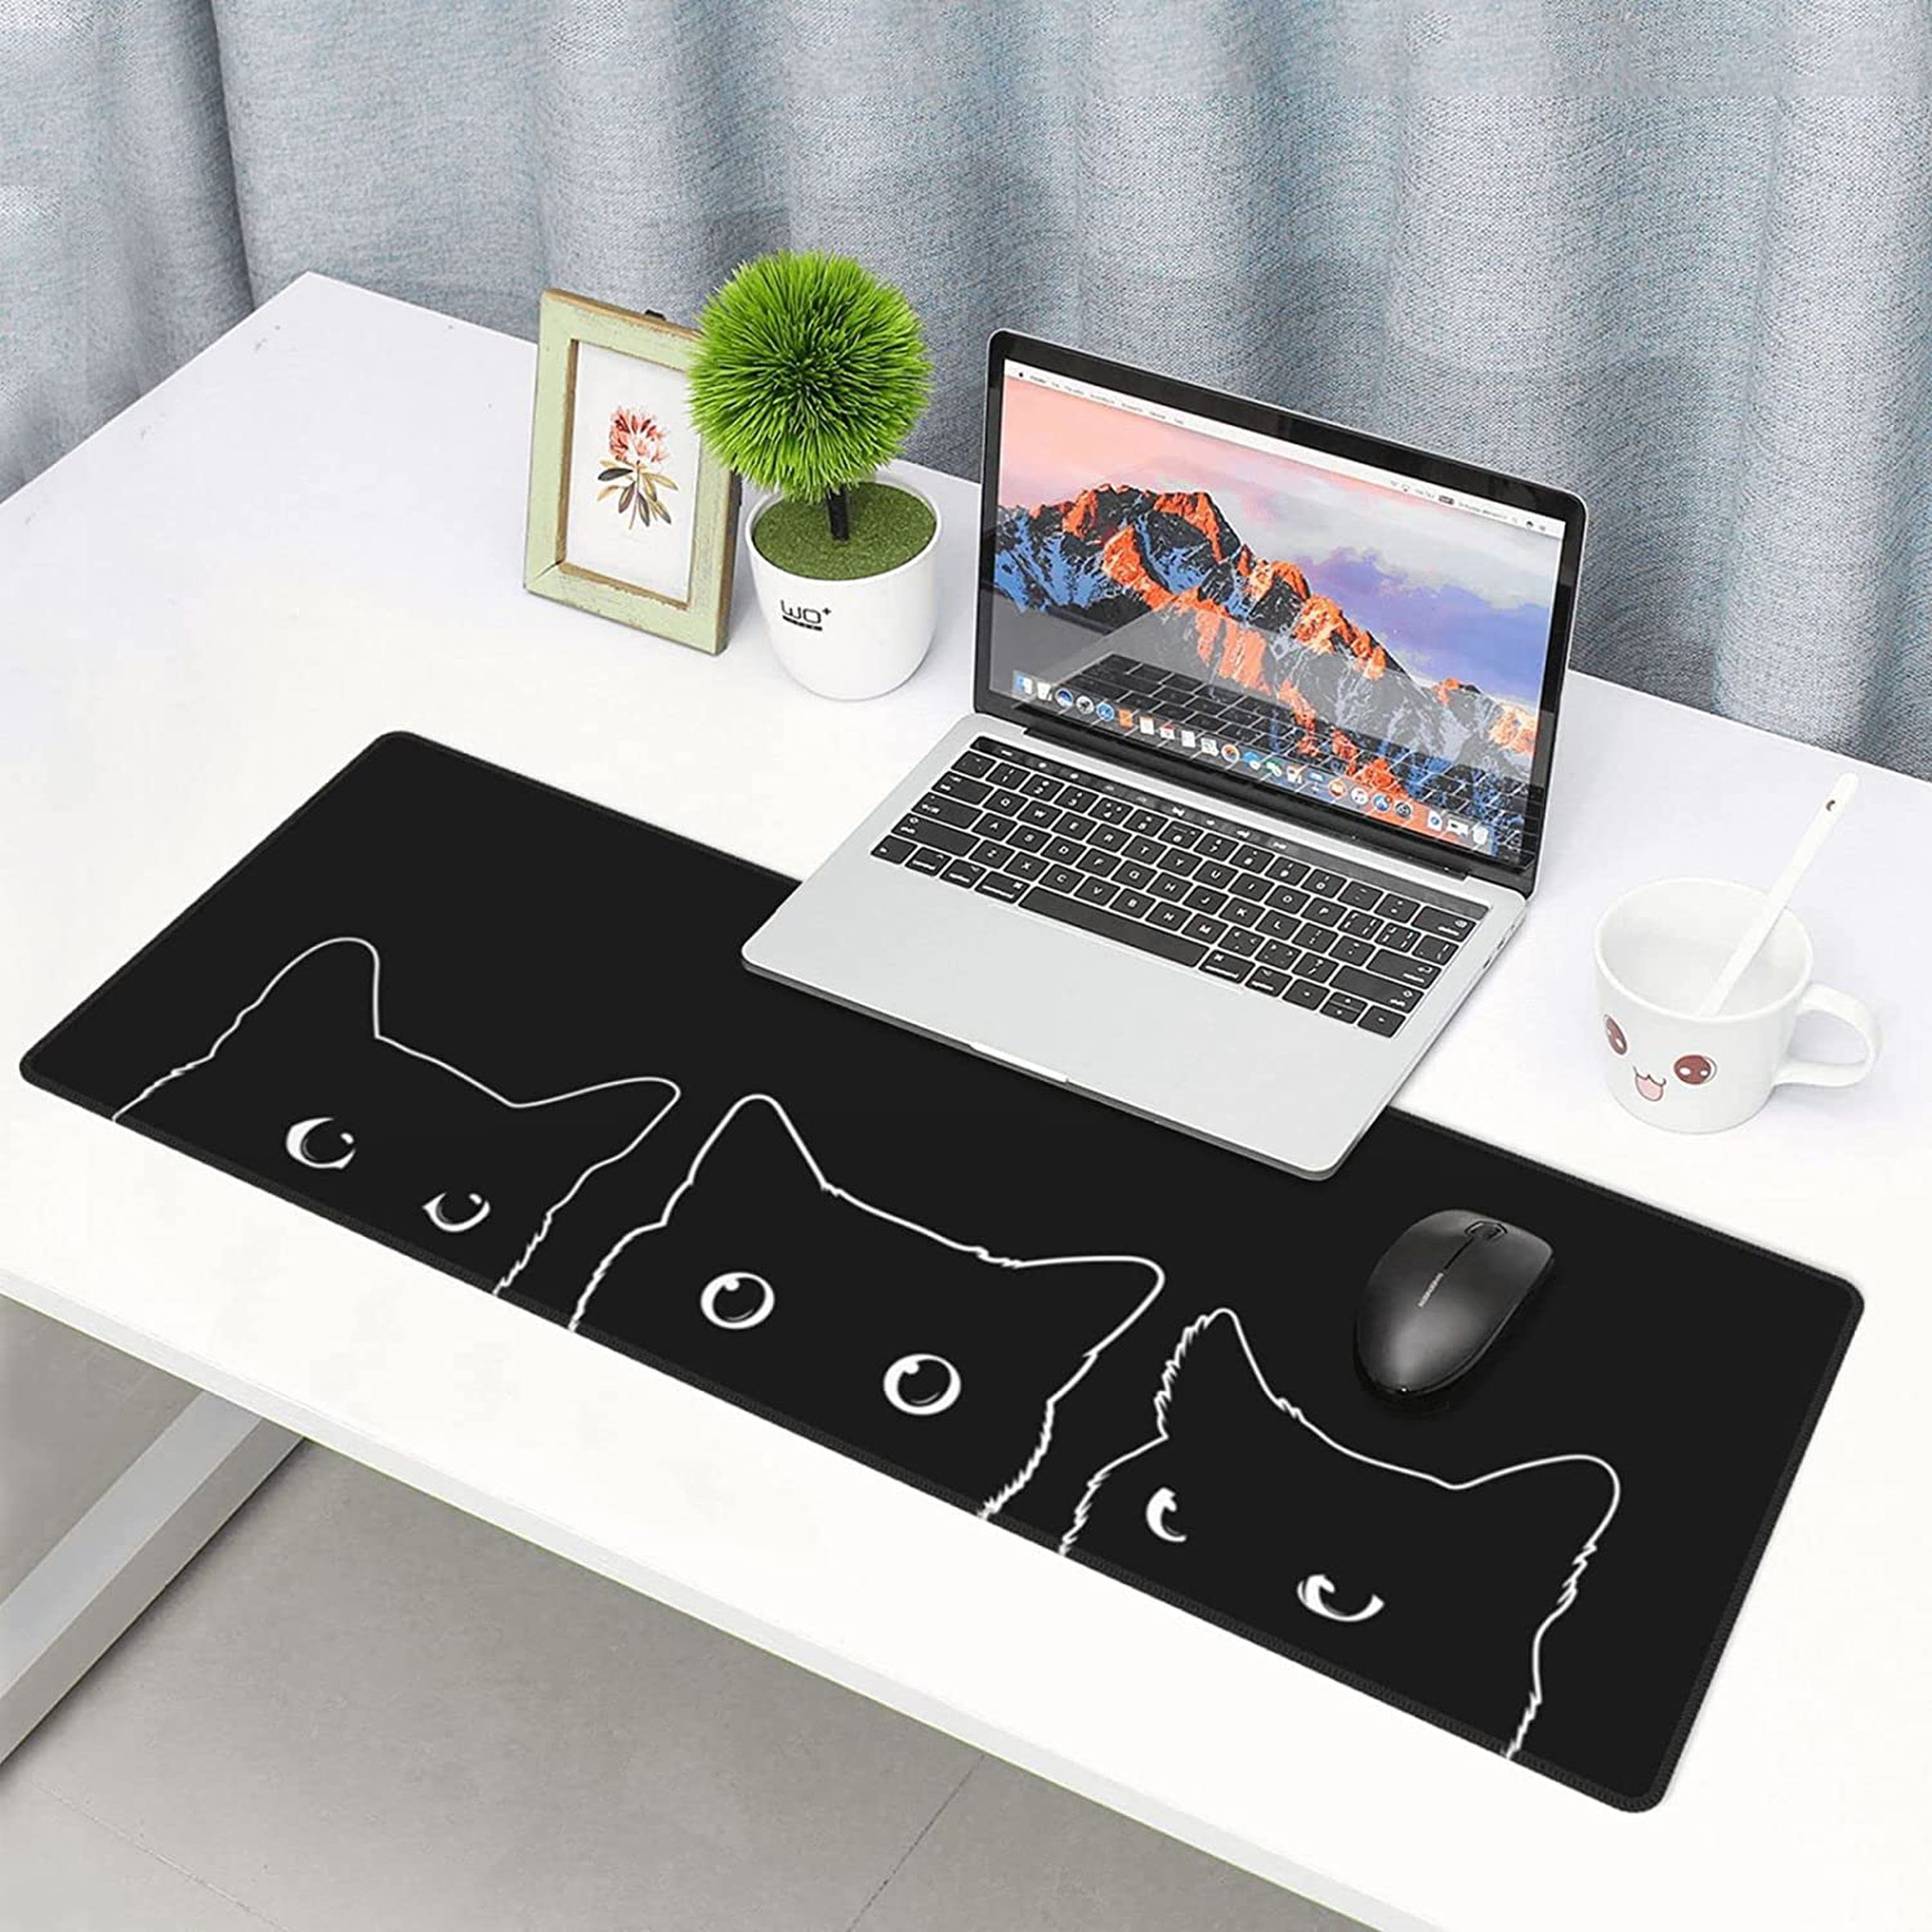 Um longo mouse pad preto com os contornos de três gatos em uma mesa branca com um laptop, uma planta e uma pequena foto emoldurada.